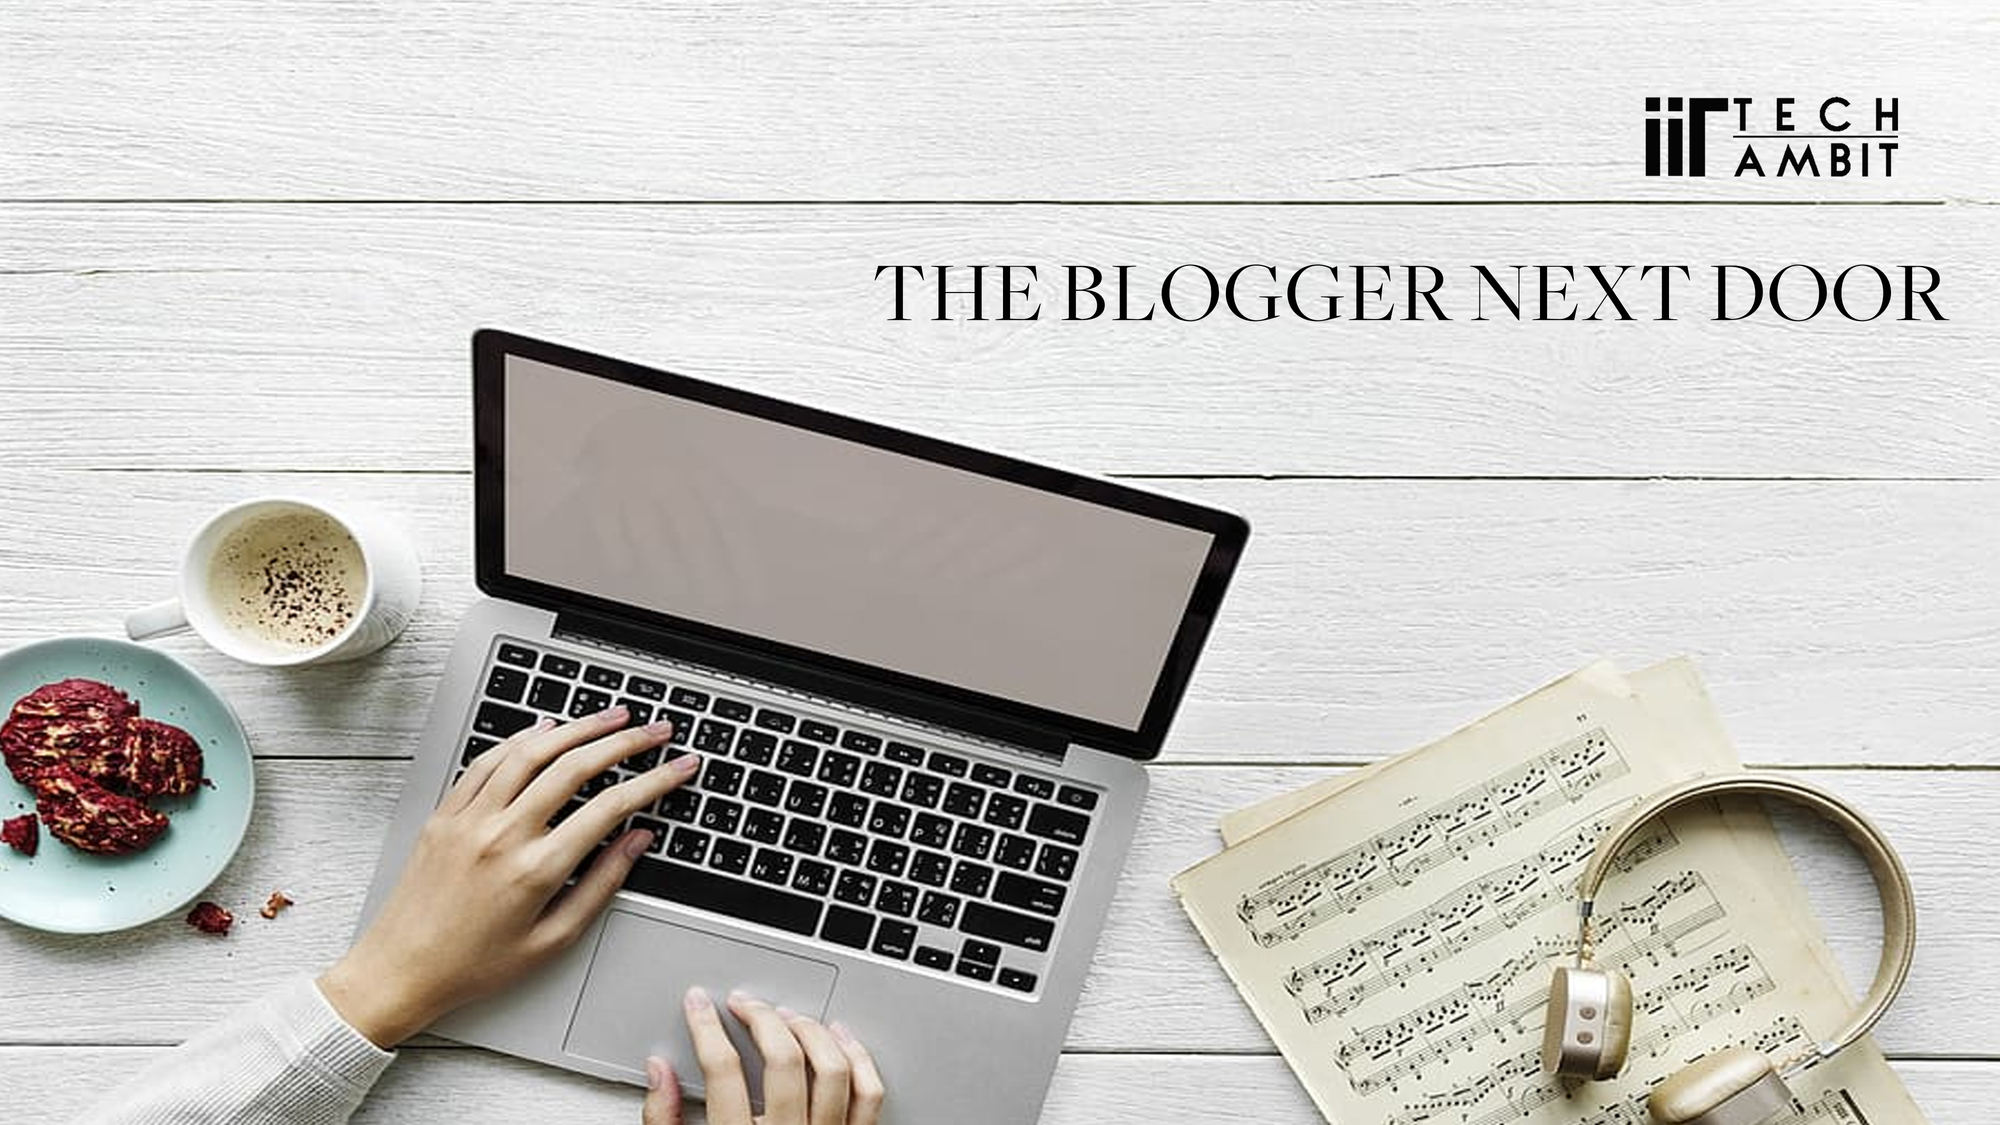 The Blogger Next Door